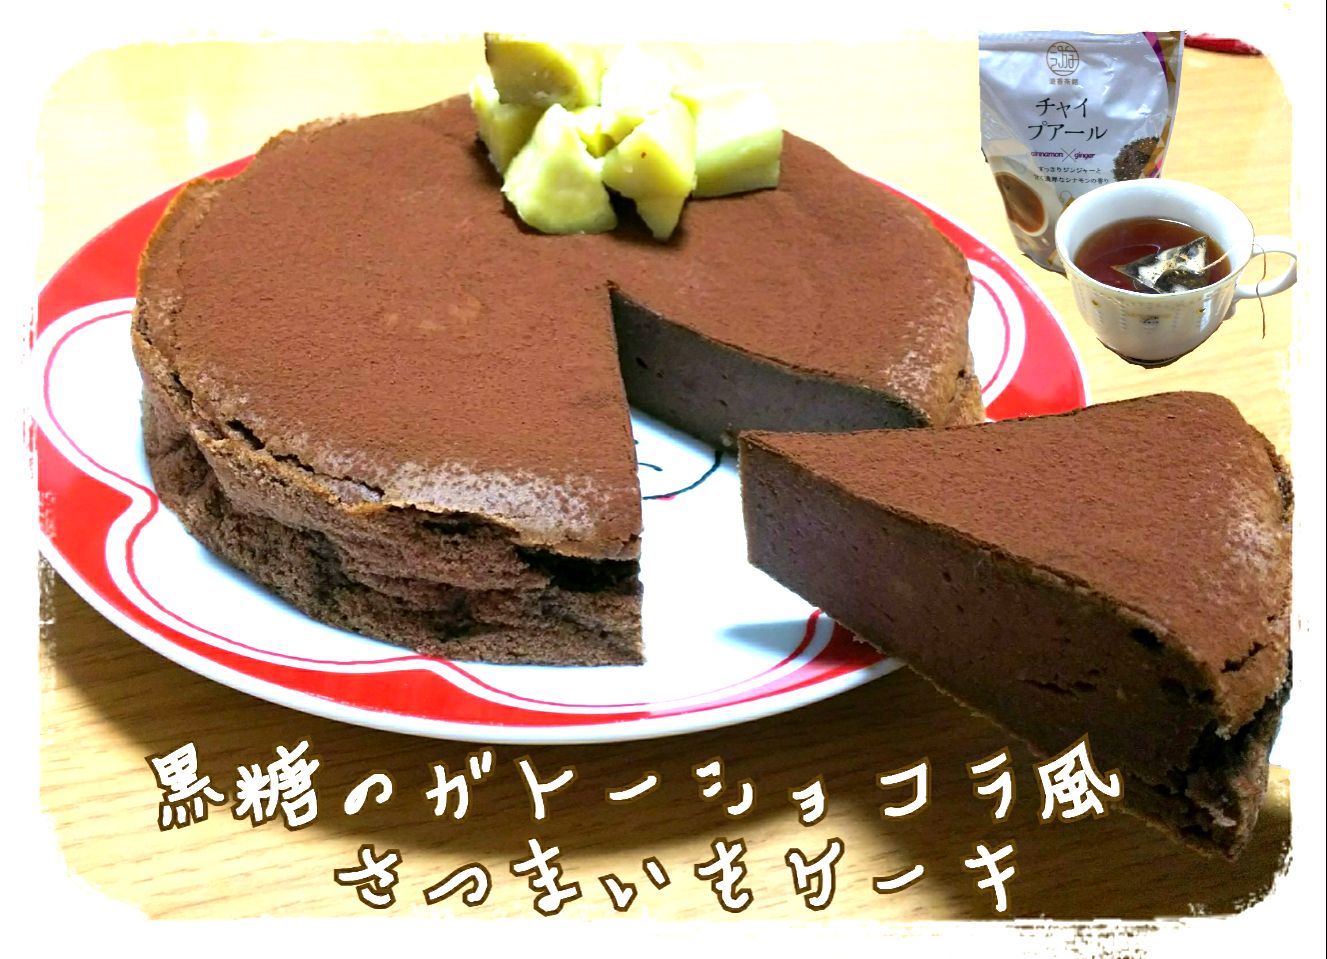 ジンジャー山崎さんの
黒糖のガトーショコラ風さつまいもケーキ